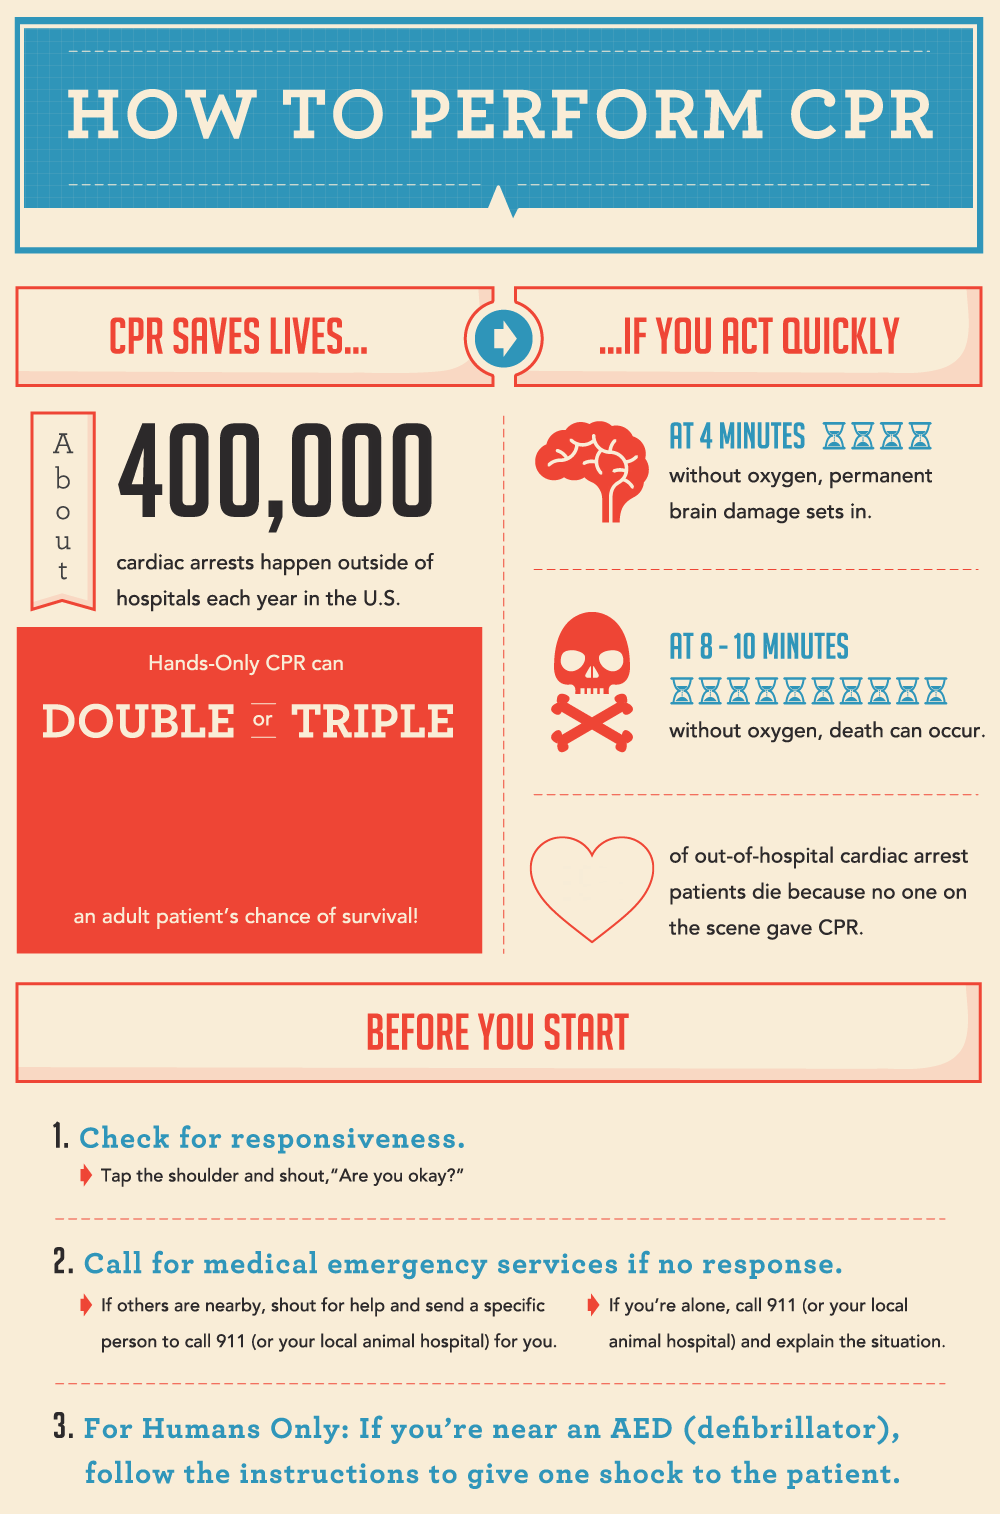 CPR маркетинг. How to perform CPR. Инфографика гиф. Cpr перевод